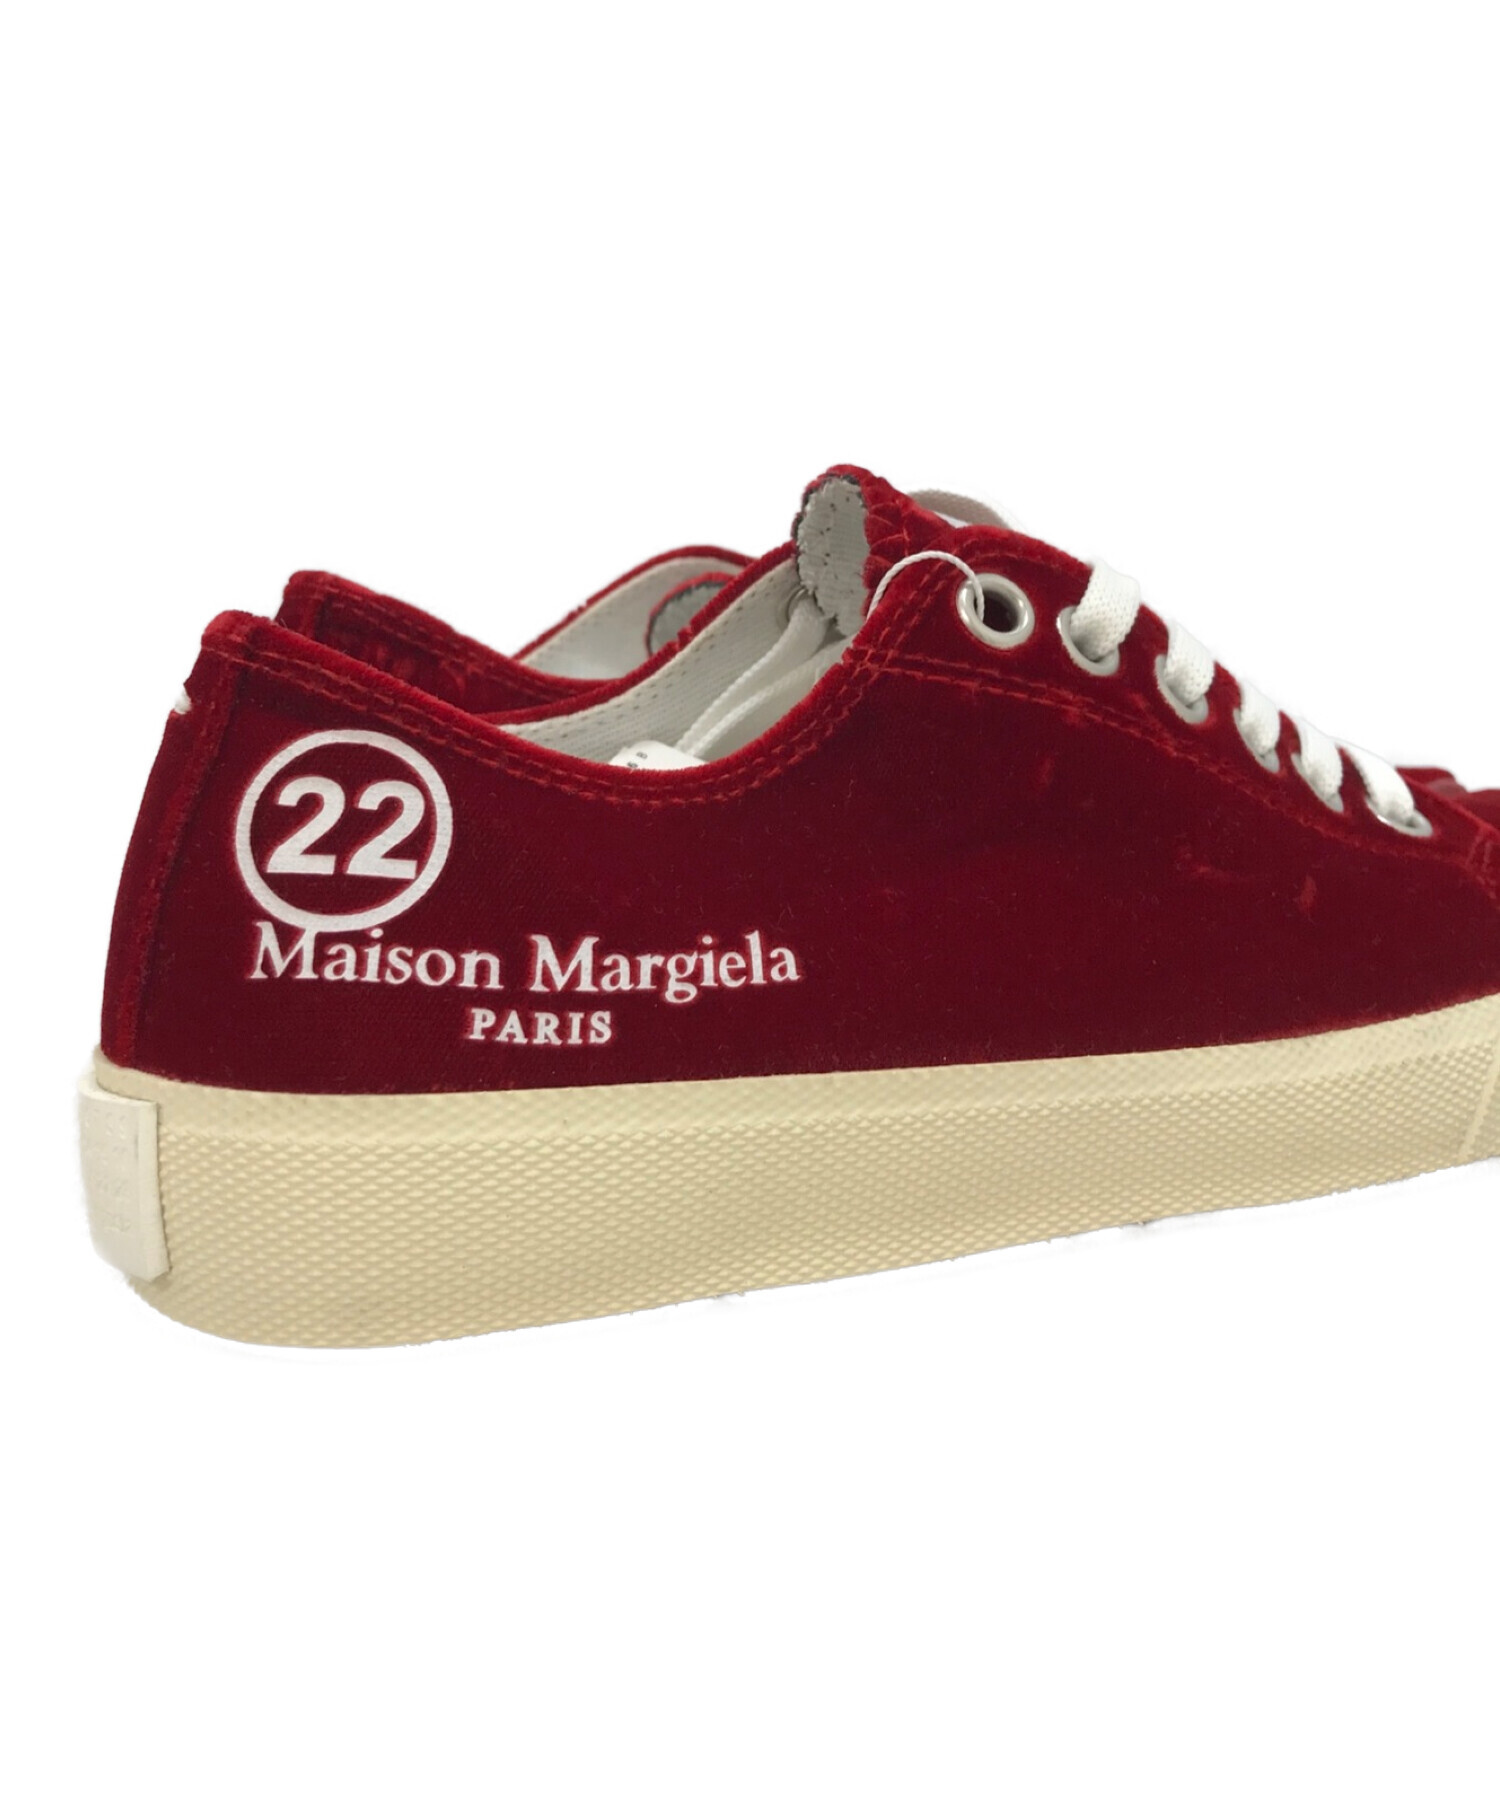 Maison Margiela (メゾンマルジェラ) ベロア足袋スニーカー レッド サイズ:35